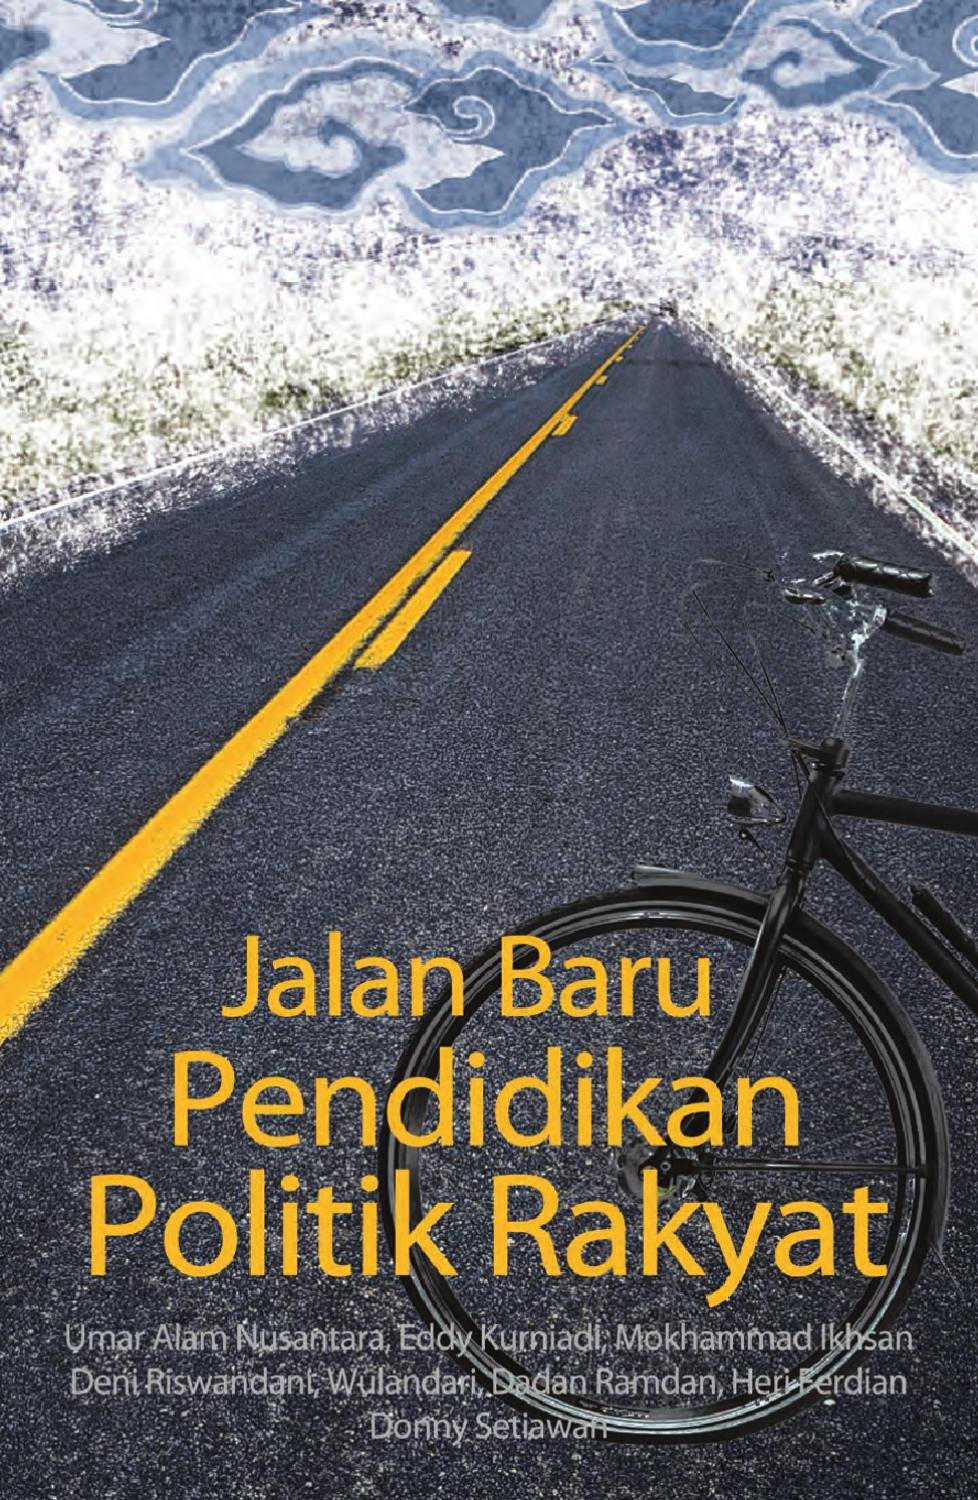 Jalan Baru Pendidikan Politik Rakyat by Perkumpulan INISIATIF